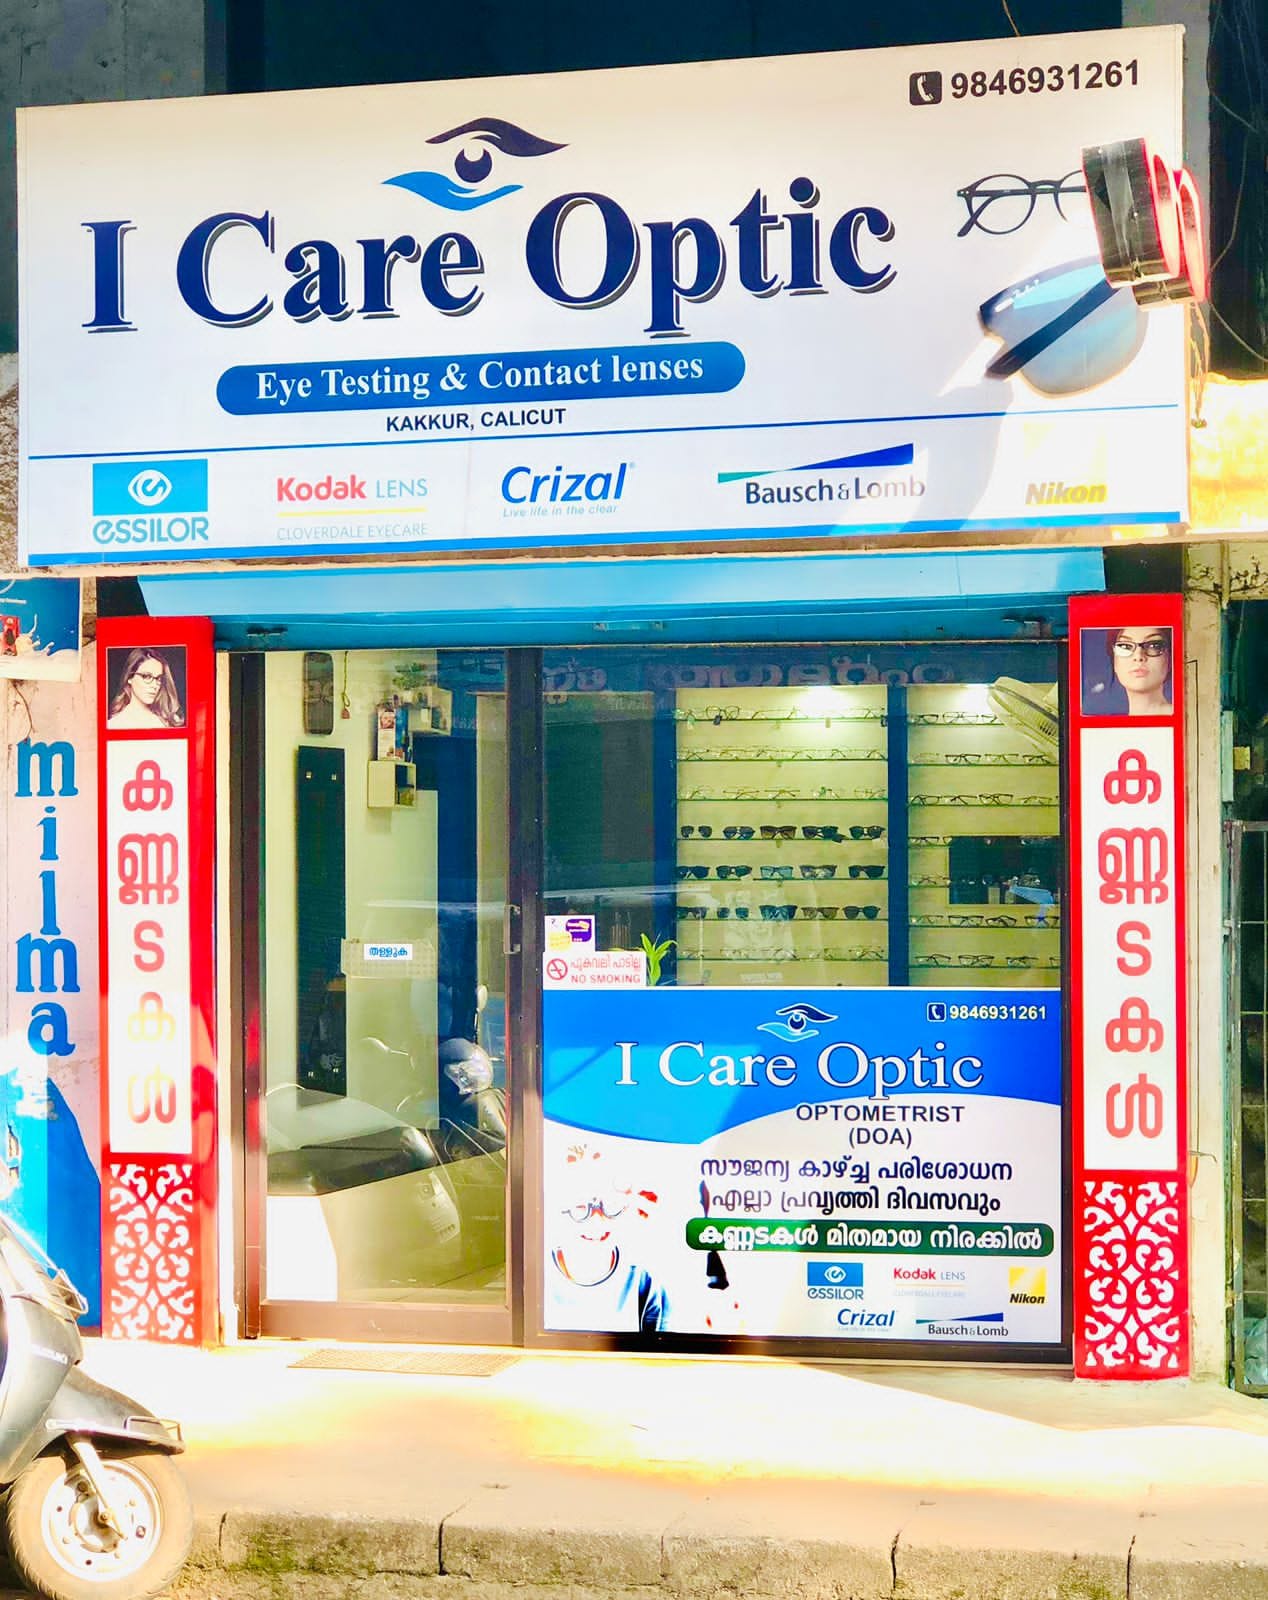 I Care Optic